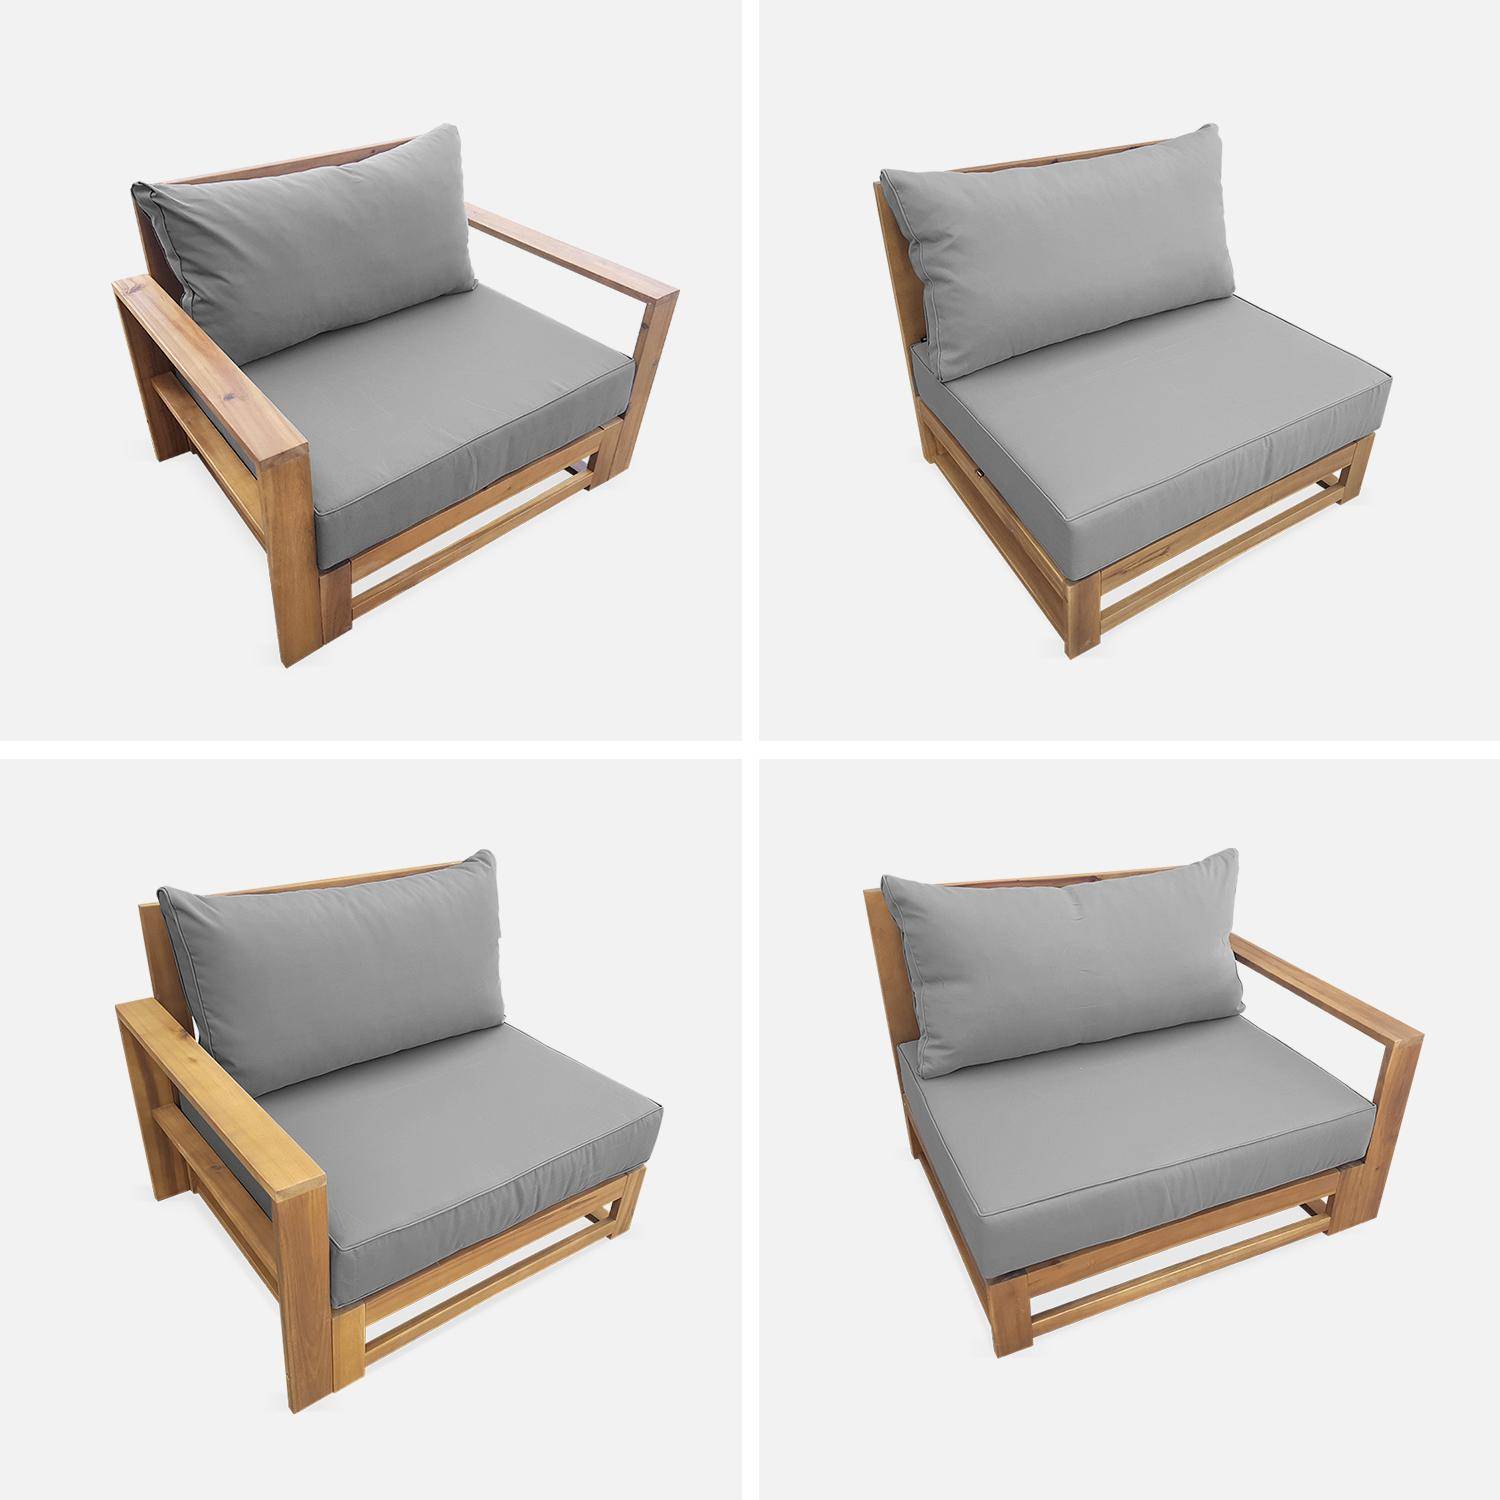 Gartenmöbel aus Holz mit 5 Sitzplätzen - Mendoza - graue Kissen, Sofa, Sessel und Couchtisch aus Akazie, 6 modulare Elemente, Design,sweeek,Photo7